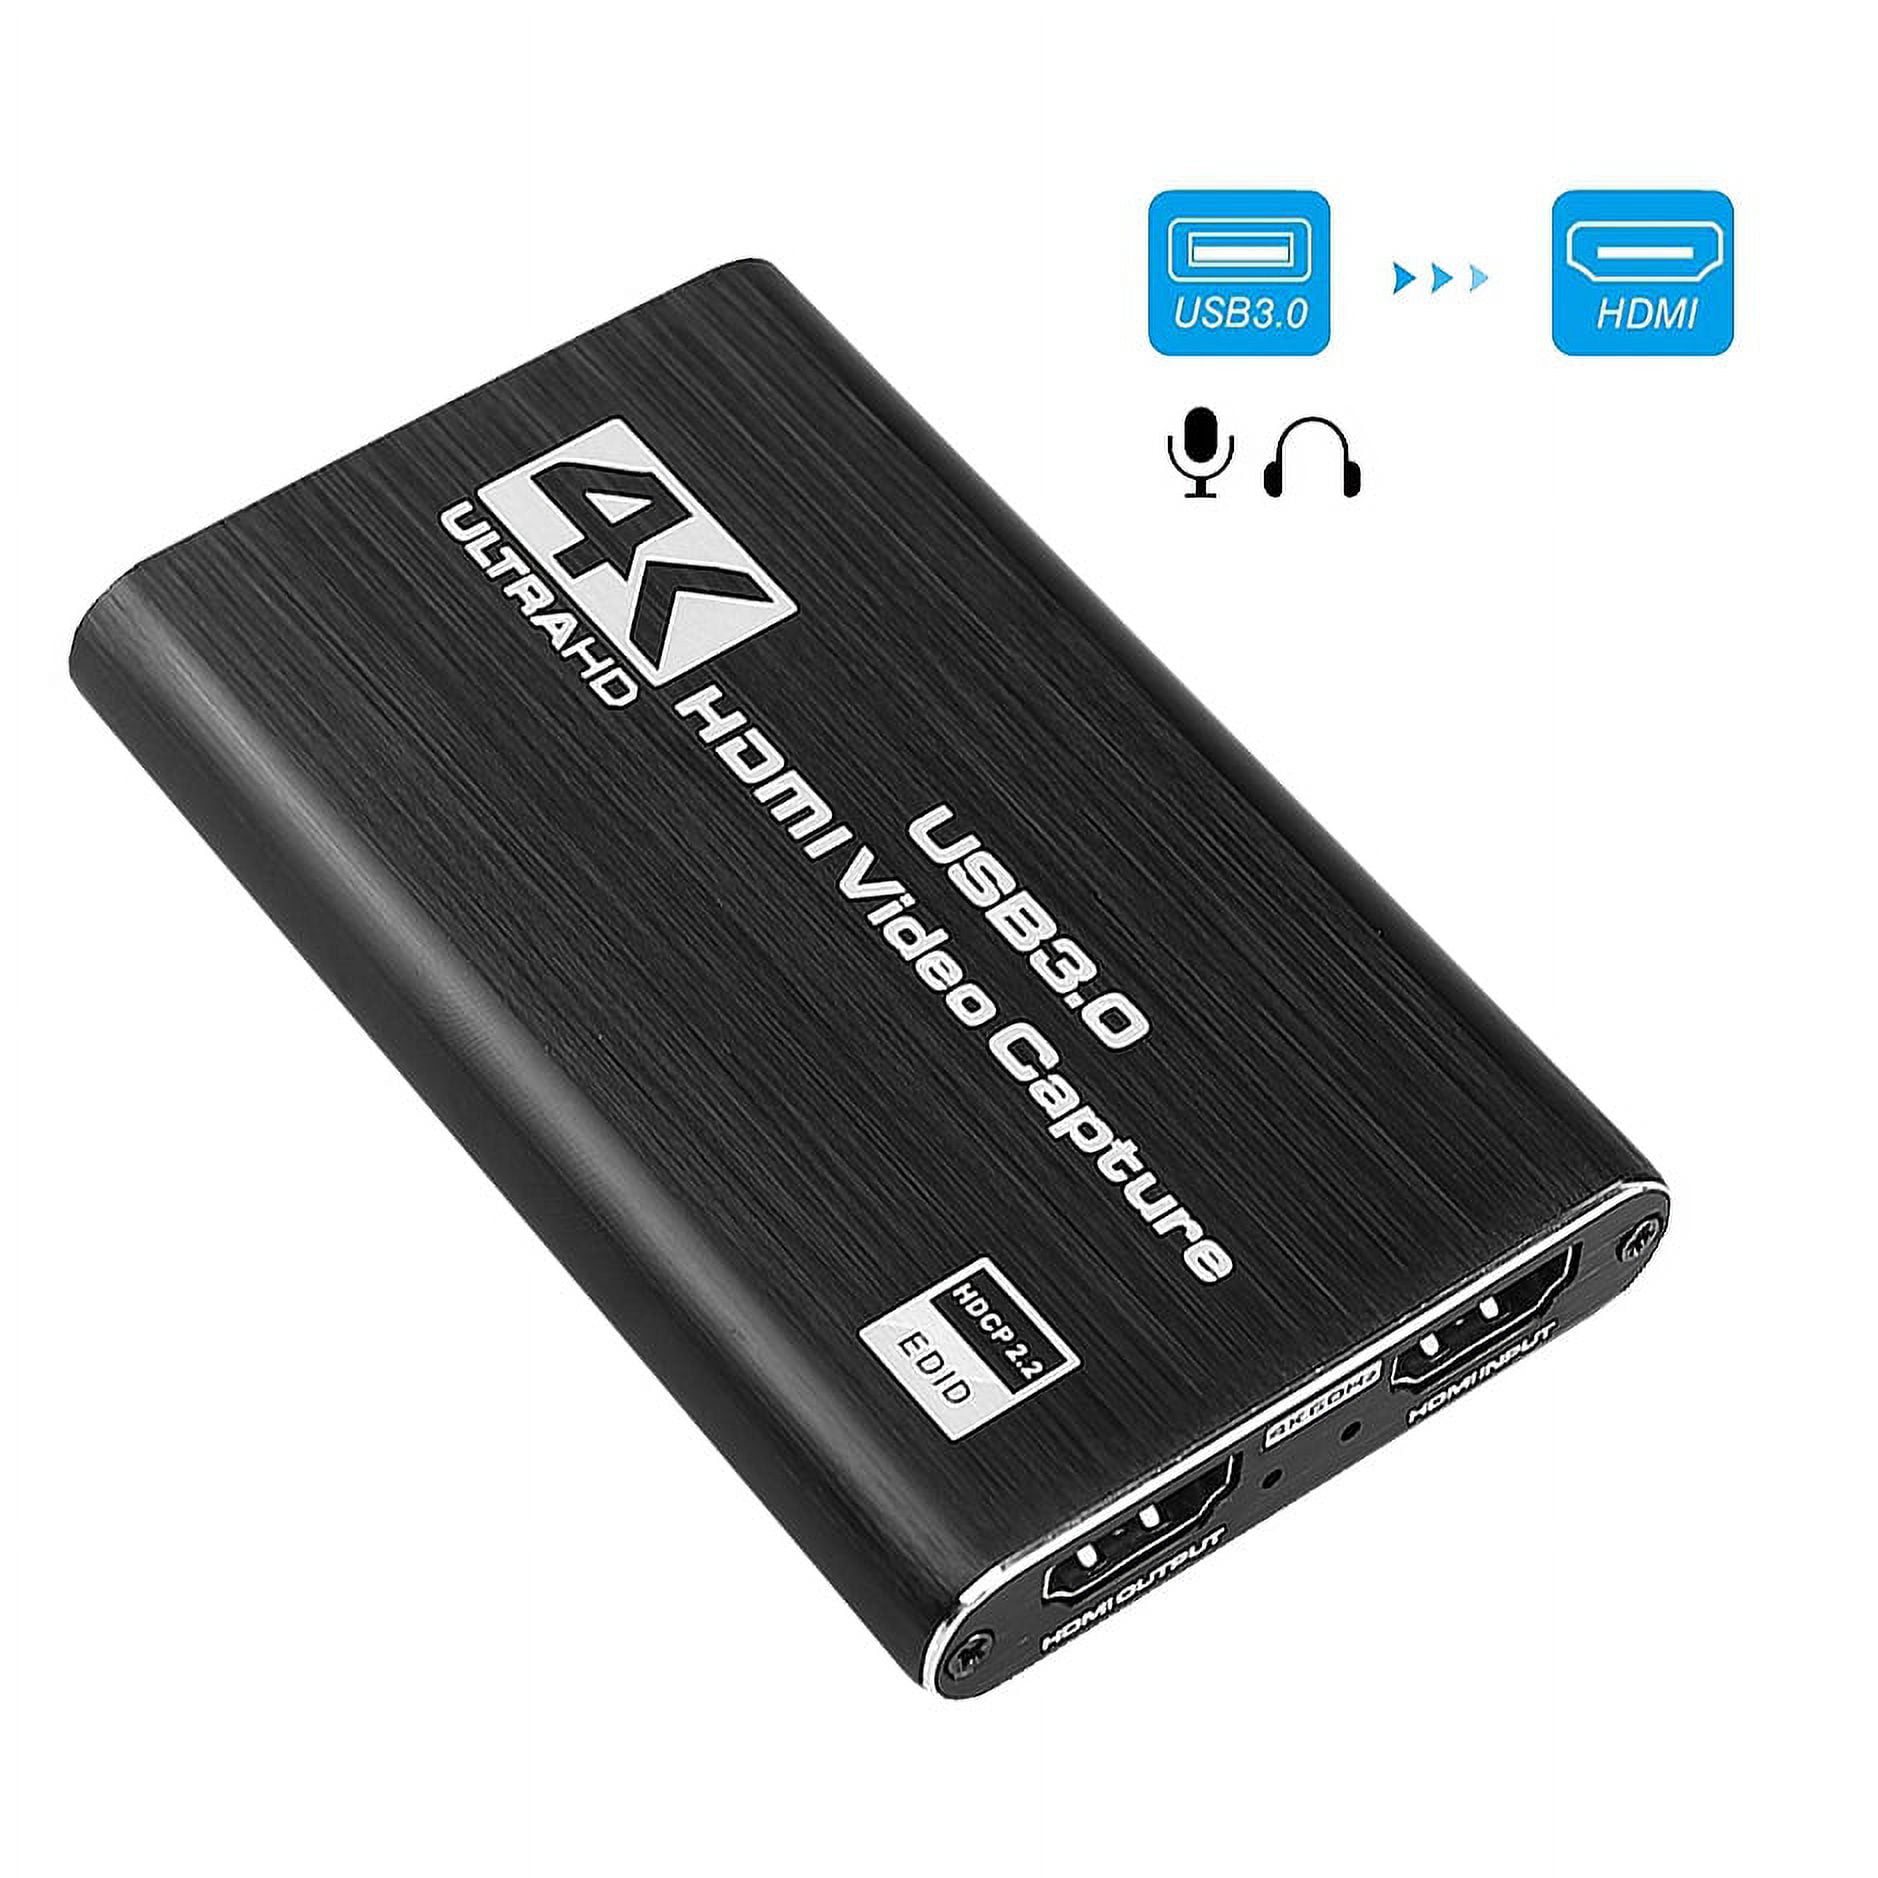 Capturadora de vídeo HDMI a USB 3.0 - USB Video UVC FullHD 1080P @ 60 Hz -  DJMania